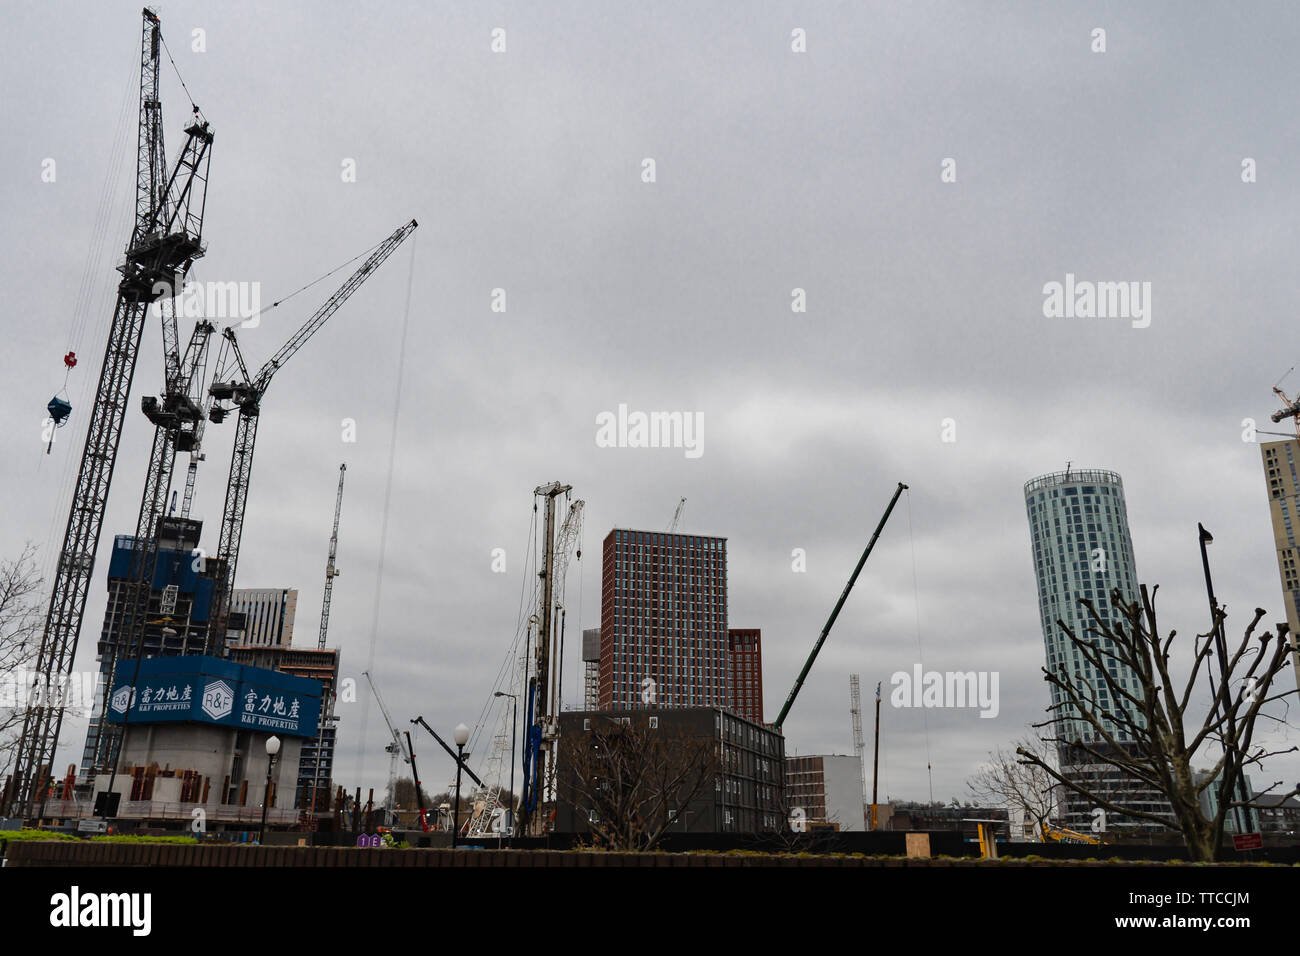 London - Nine Elms Pier, Battersea - March 20, 2019 Stock Photo